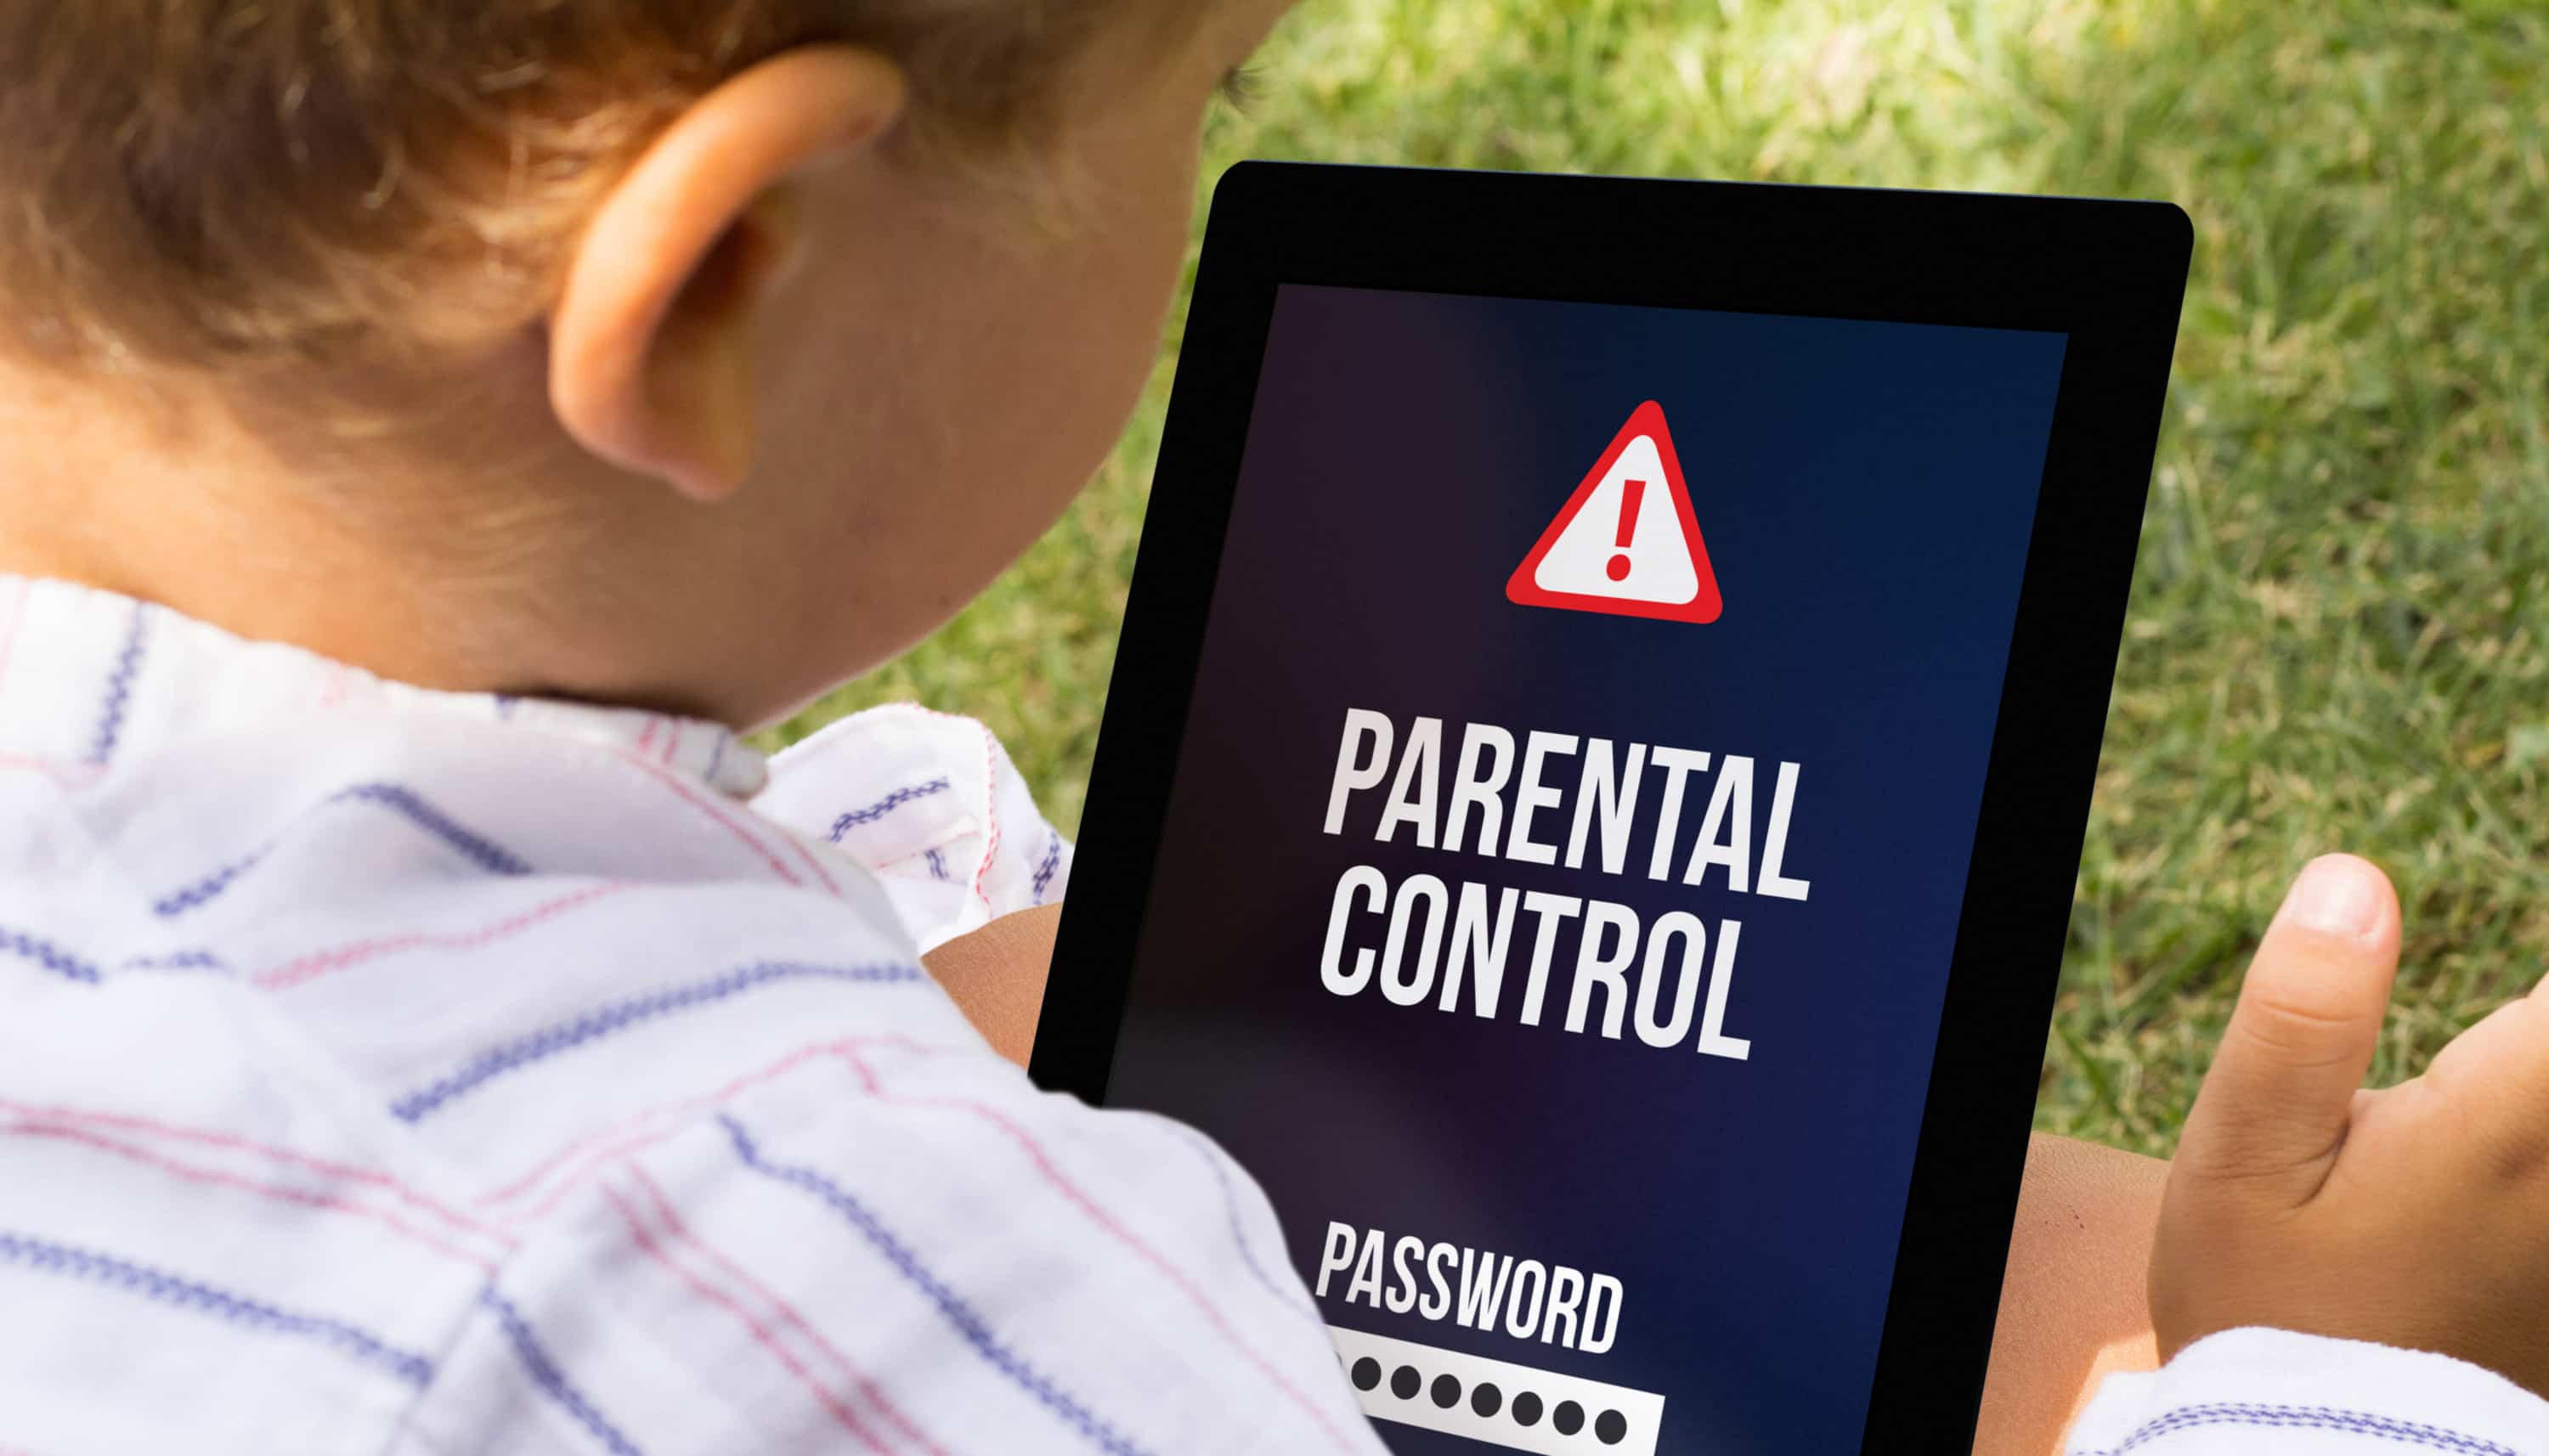 Parents control. Контроль родителей. Родительский контроль в интернете. Детский смартфон с родительским контролем. Фото родительского контроля на планшете.